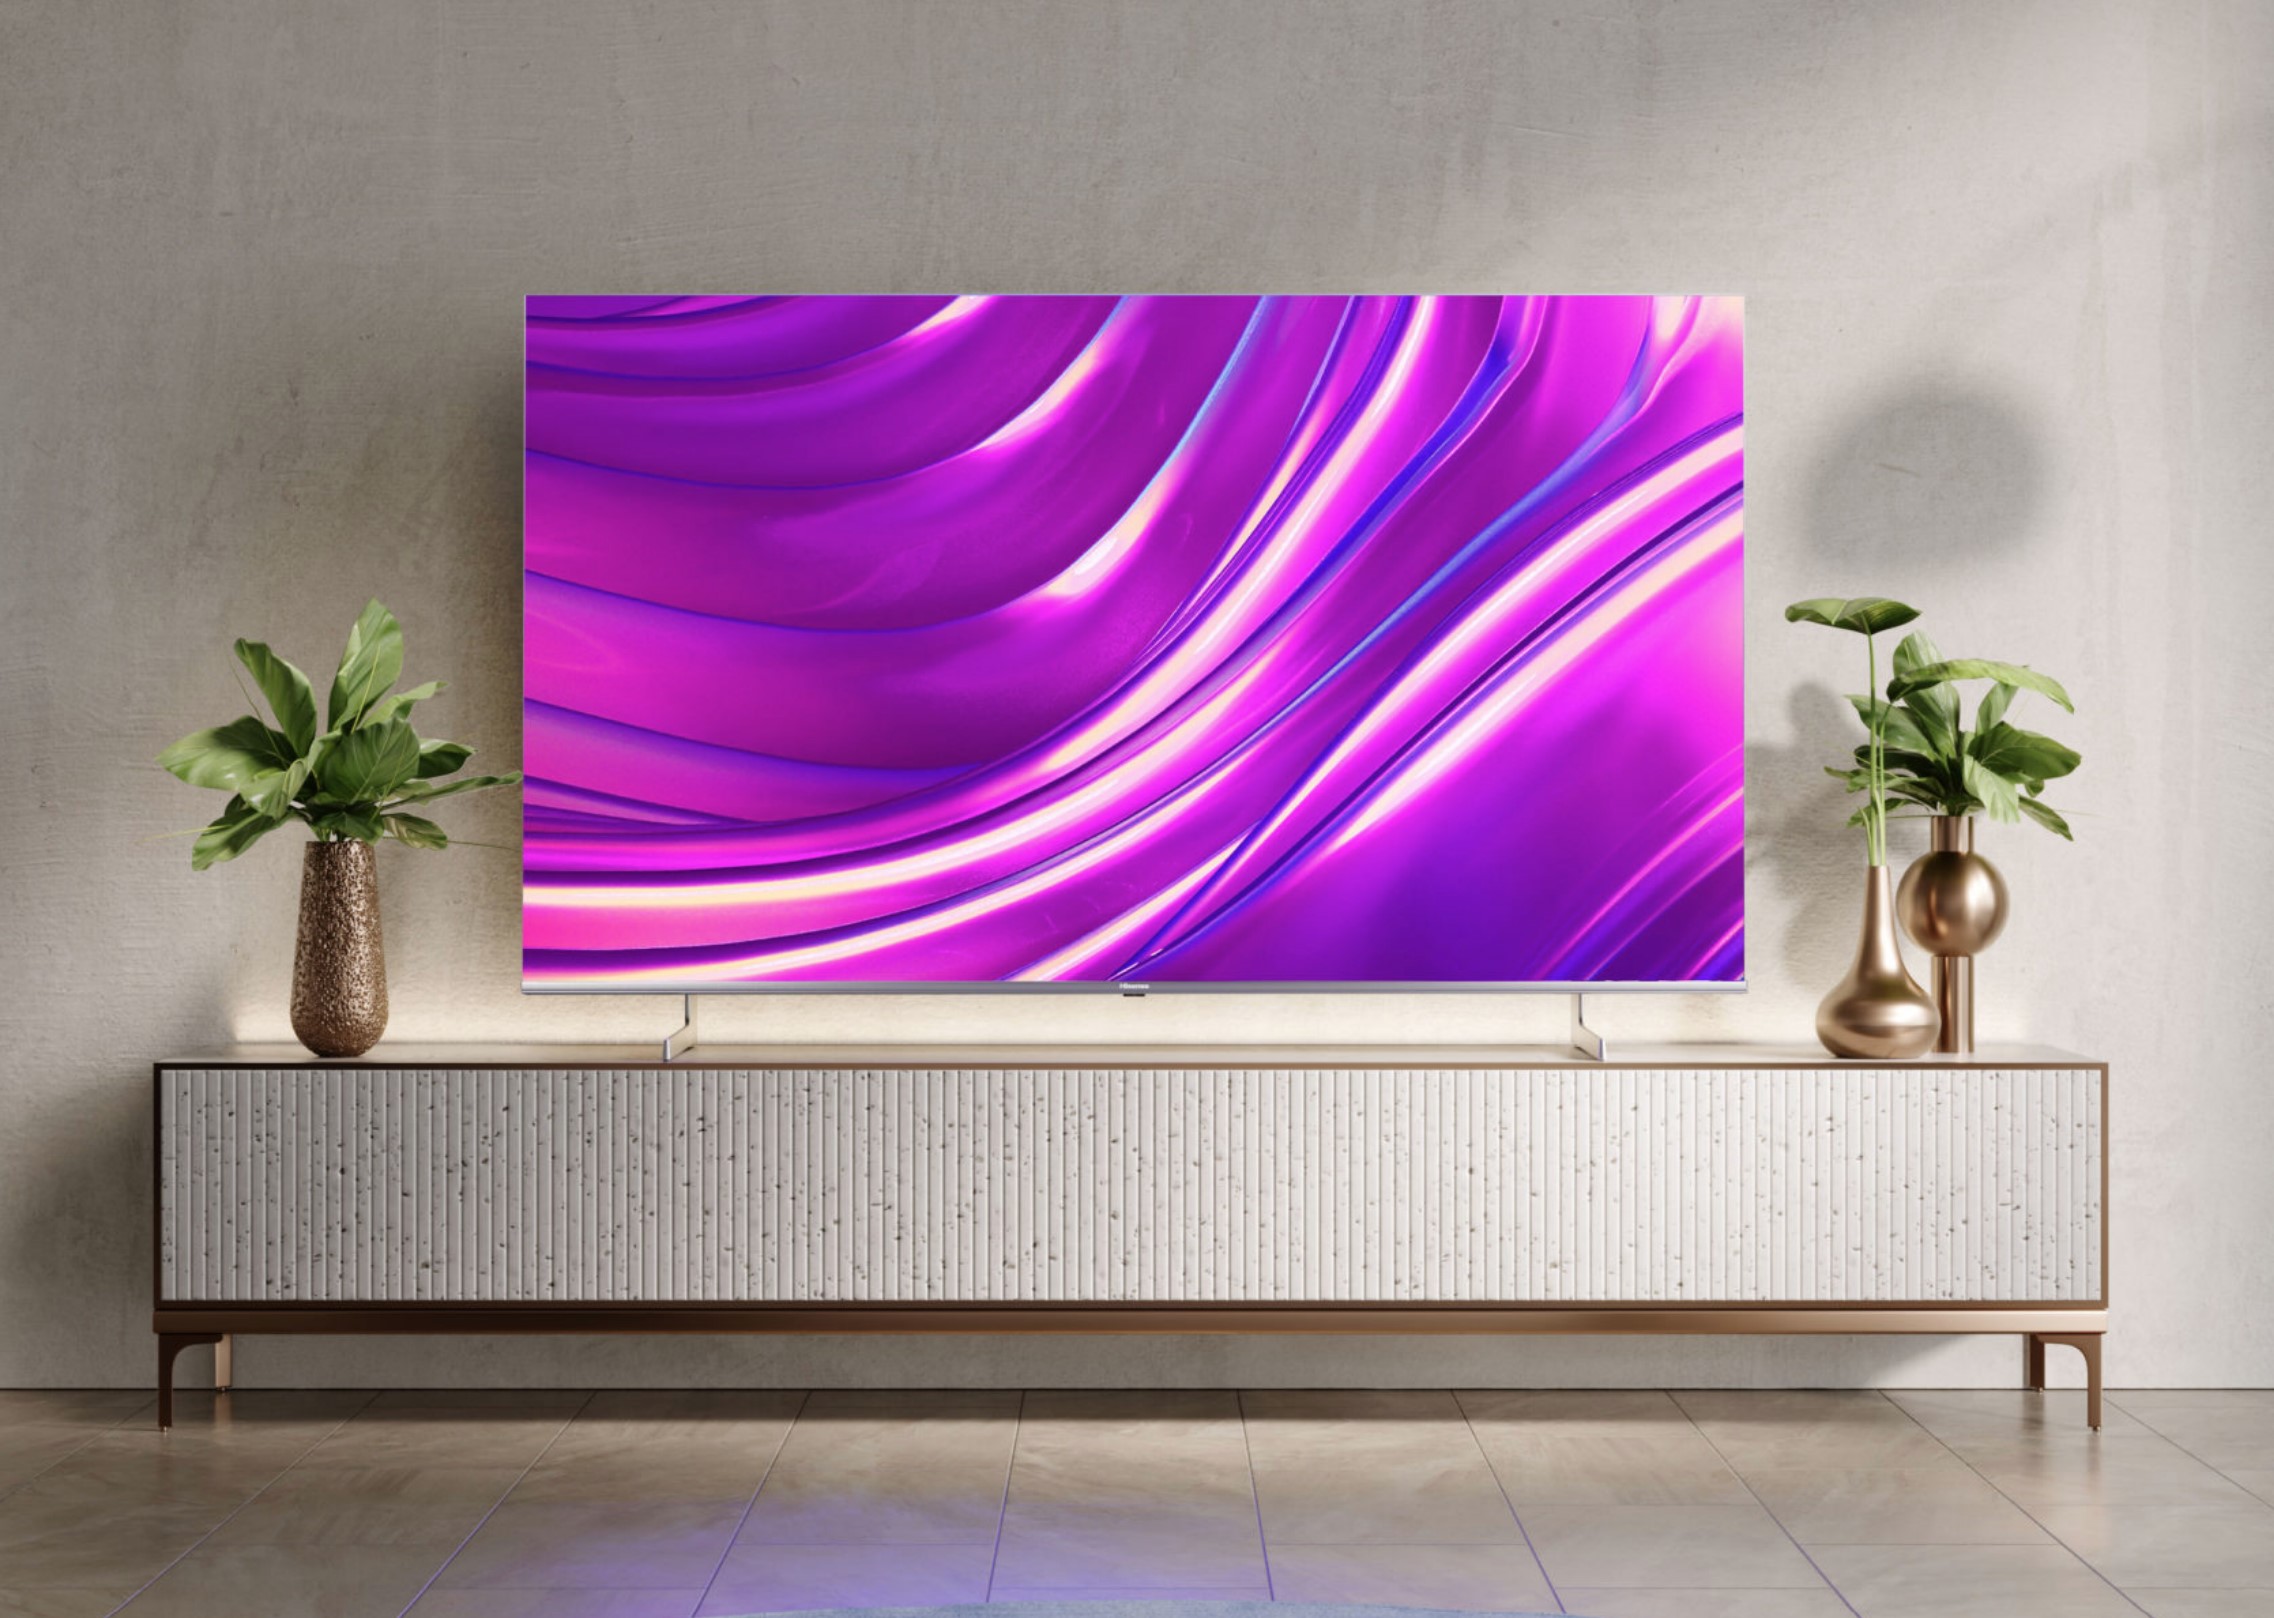 Hisense U8HAU 2022 4K Mini-LED TV for the masses (AV review)